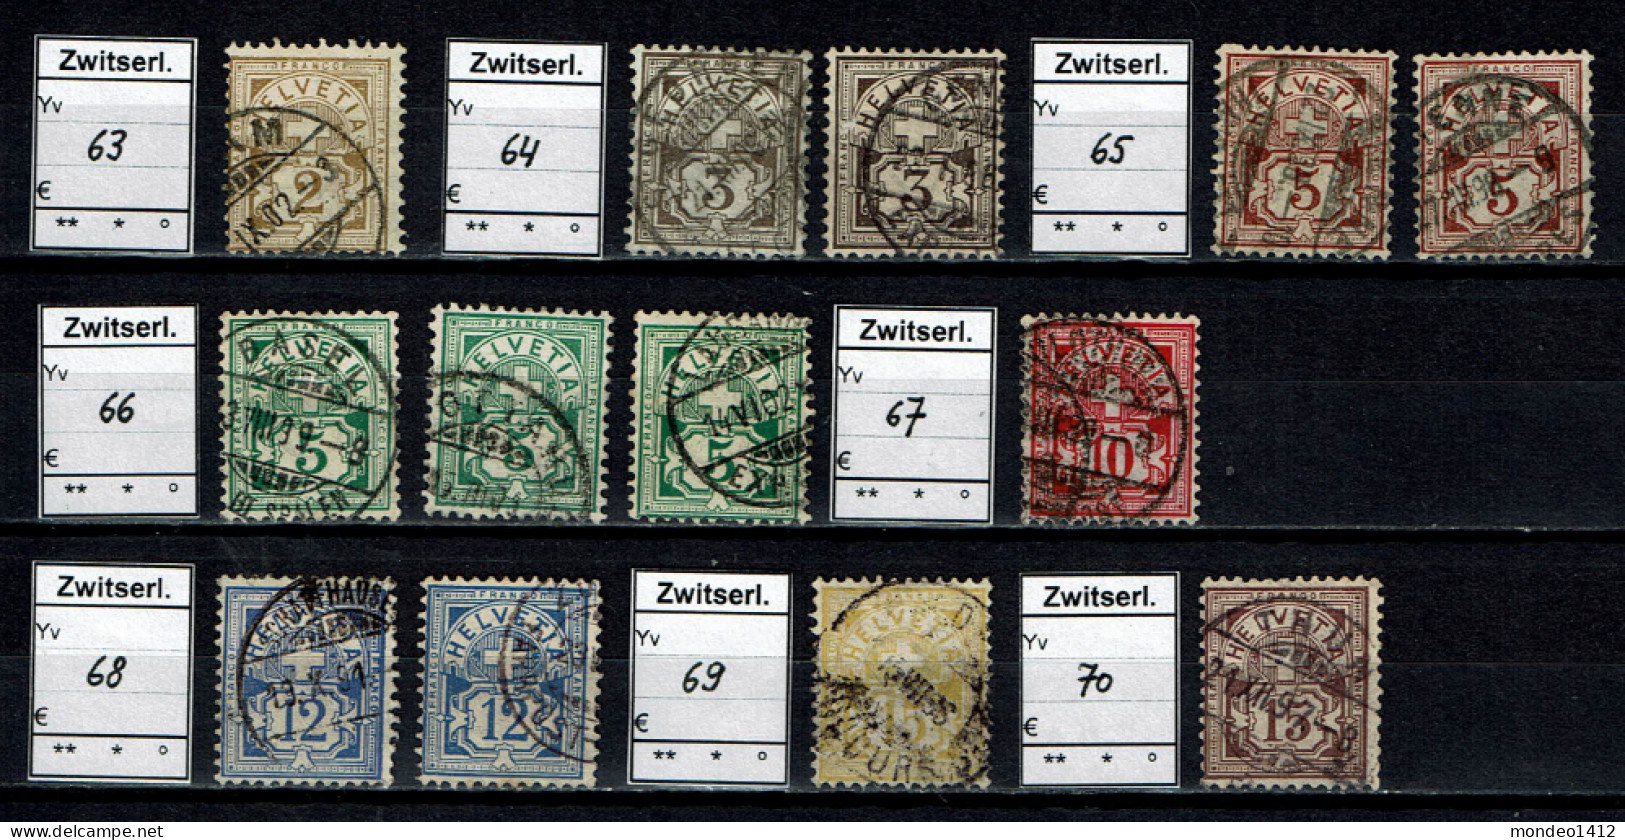 Suisse 1882 - YT 63-64-65-66-67-68-69-70 - Oblit. Used - Oblitérés